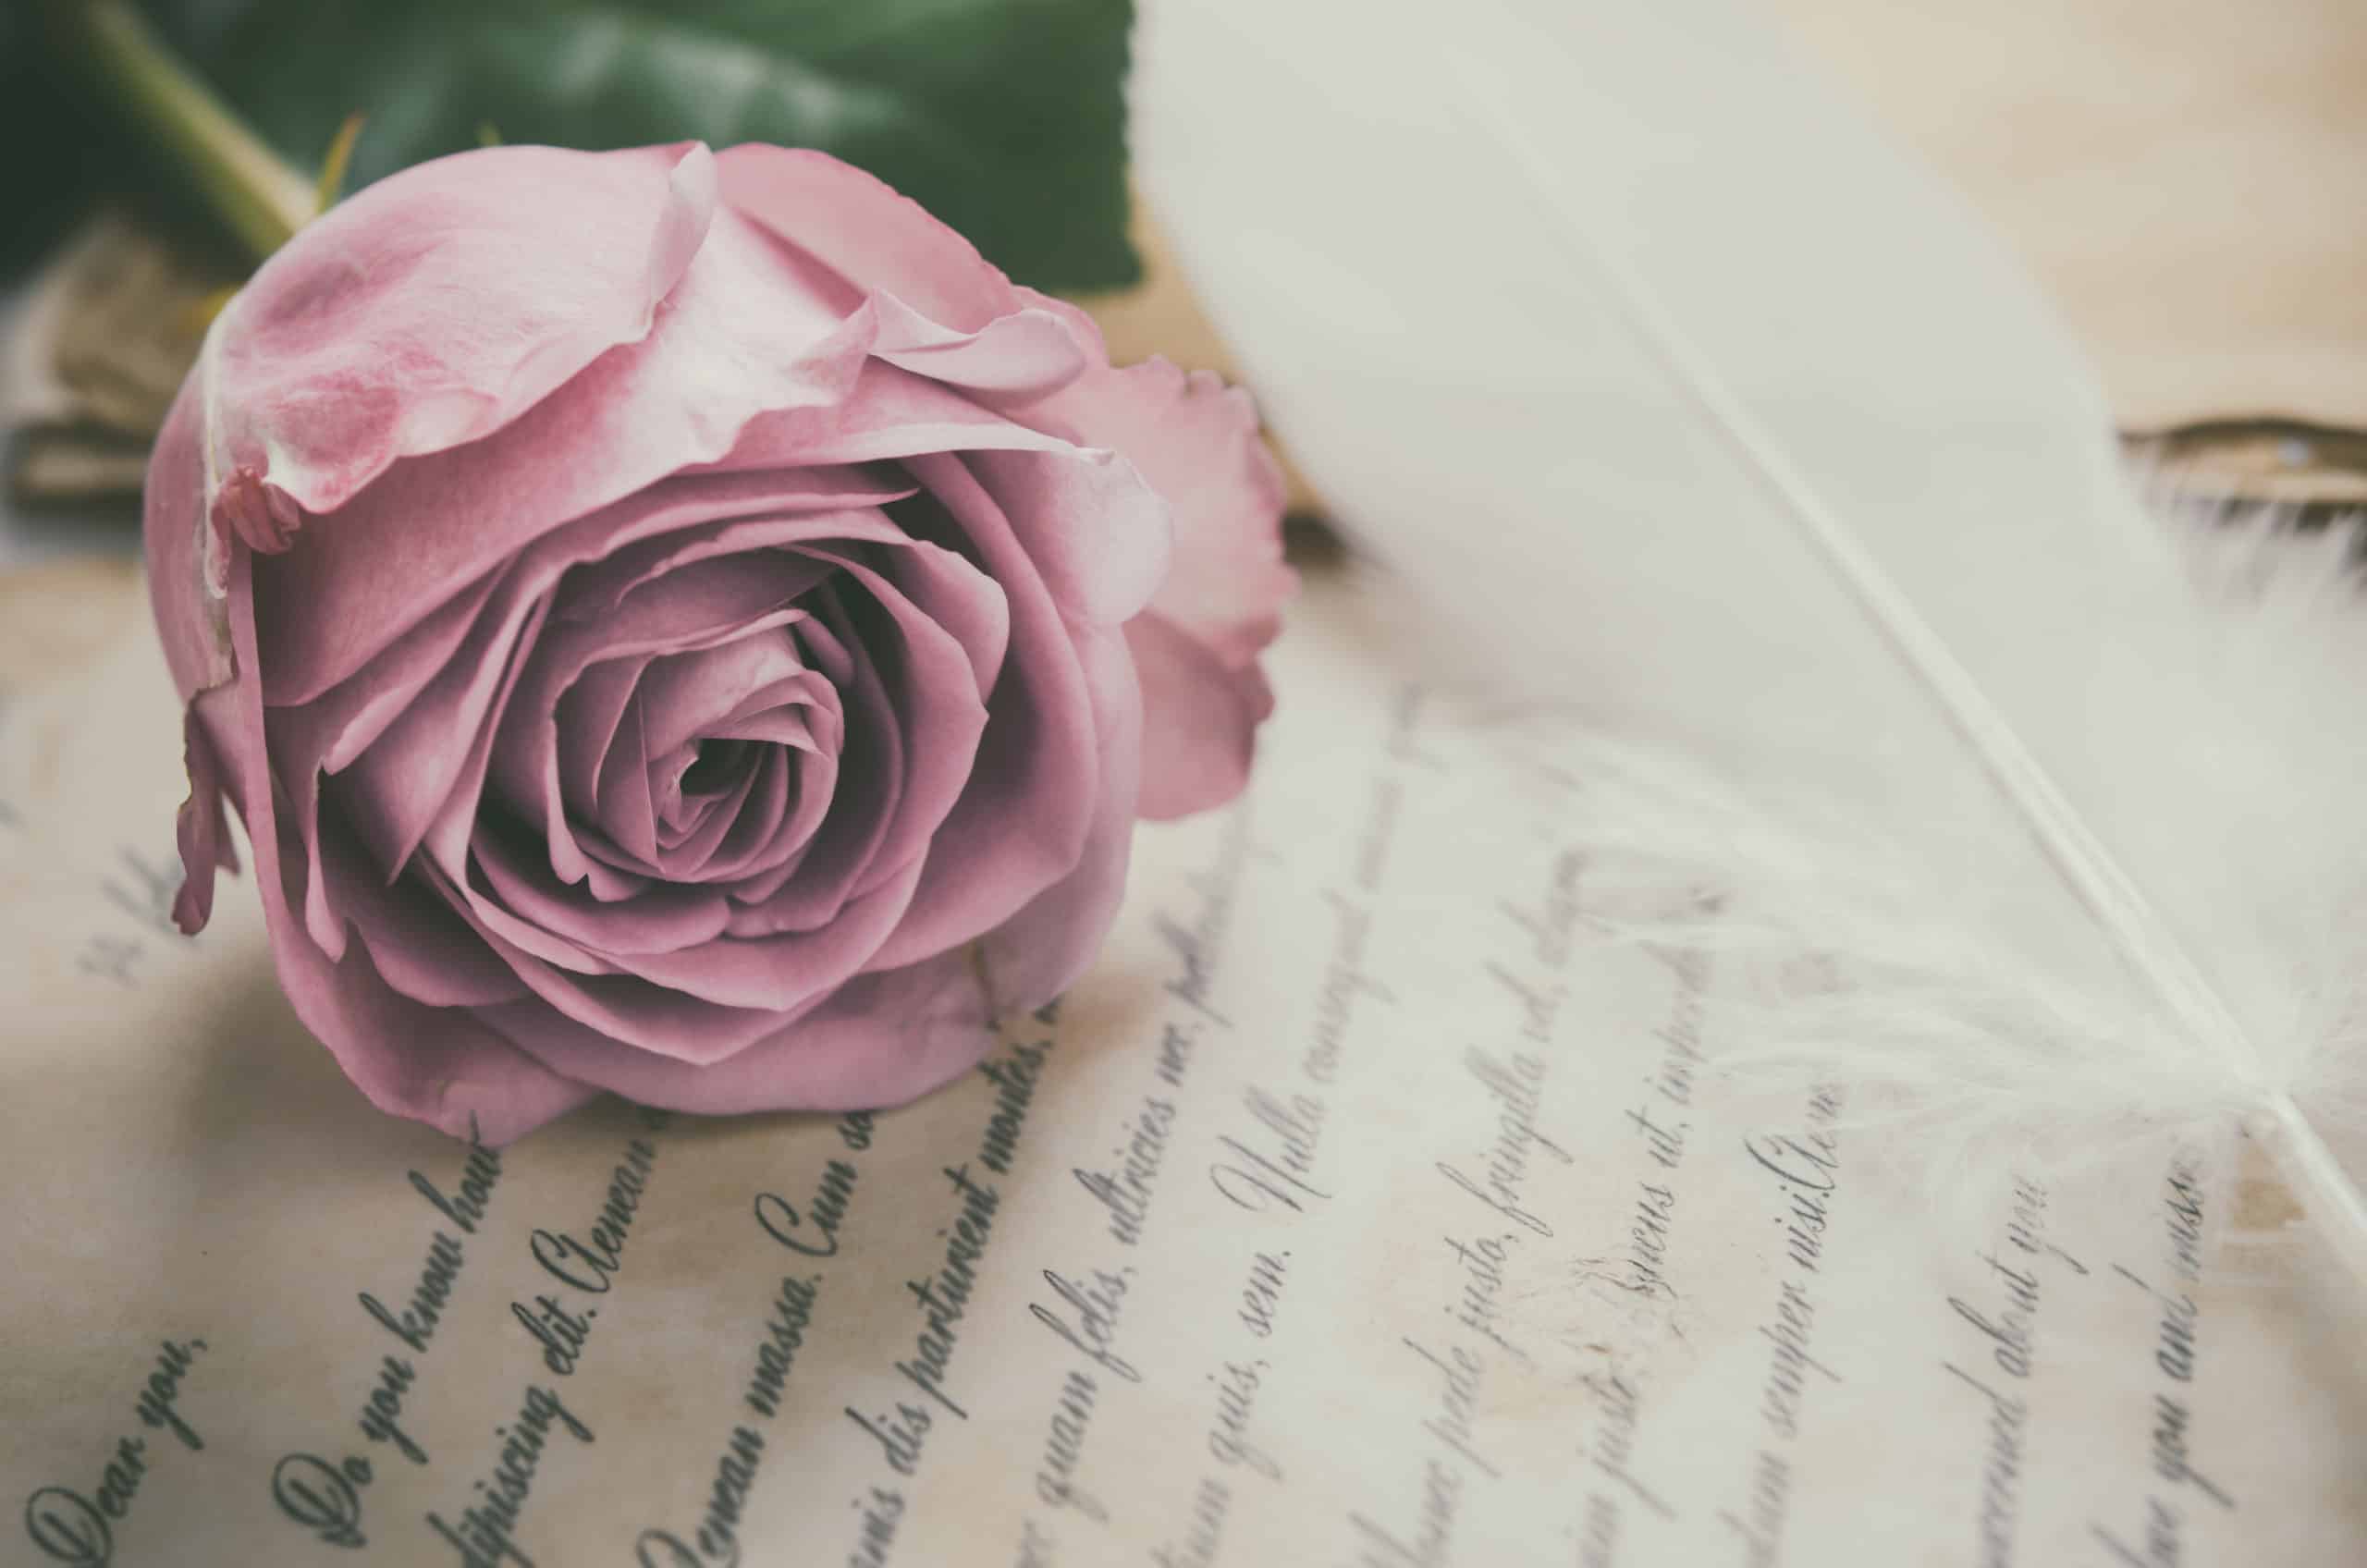 Pink rose on top of vintage love verses.